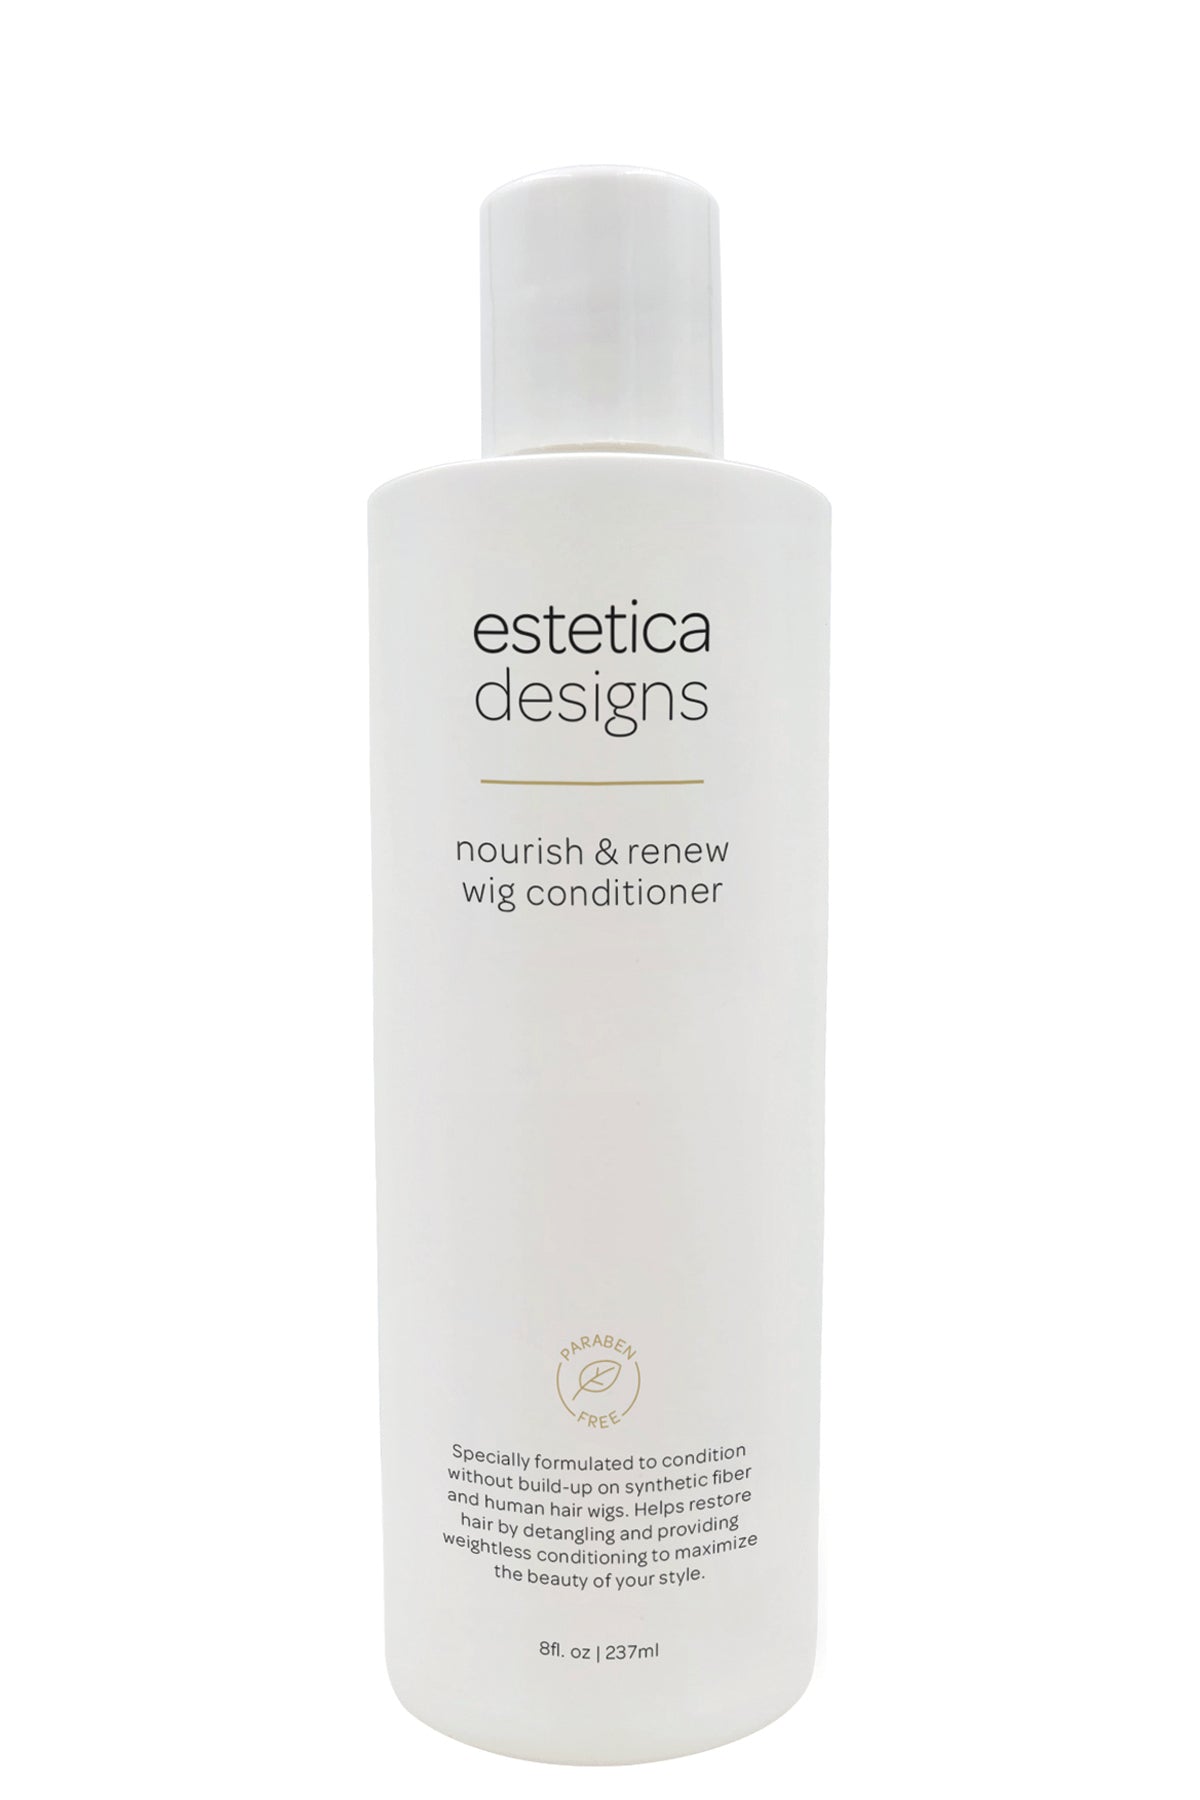 Estetica | Nourish and Renew Wig Conditioner by Estetica